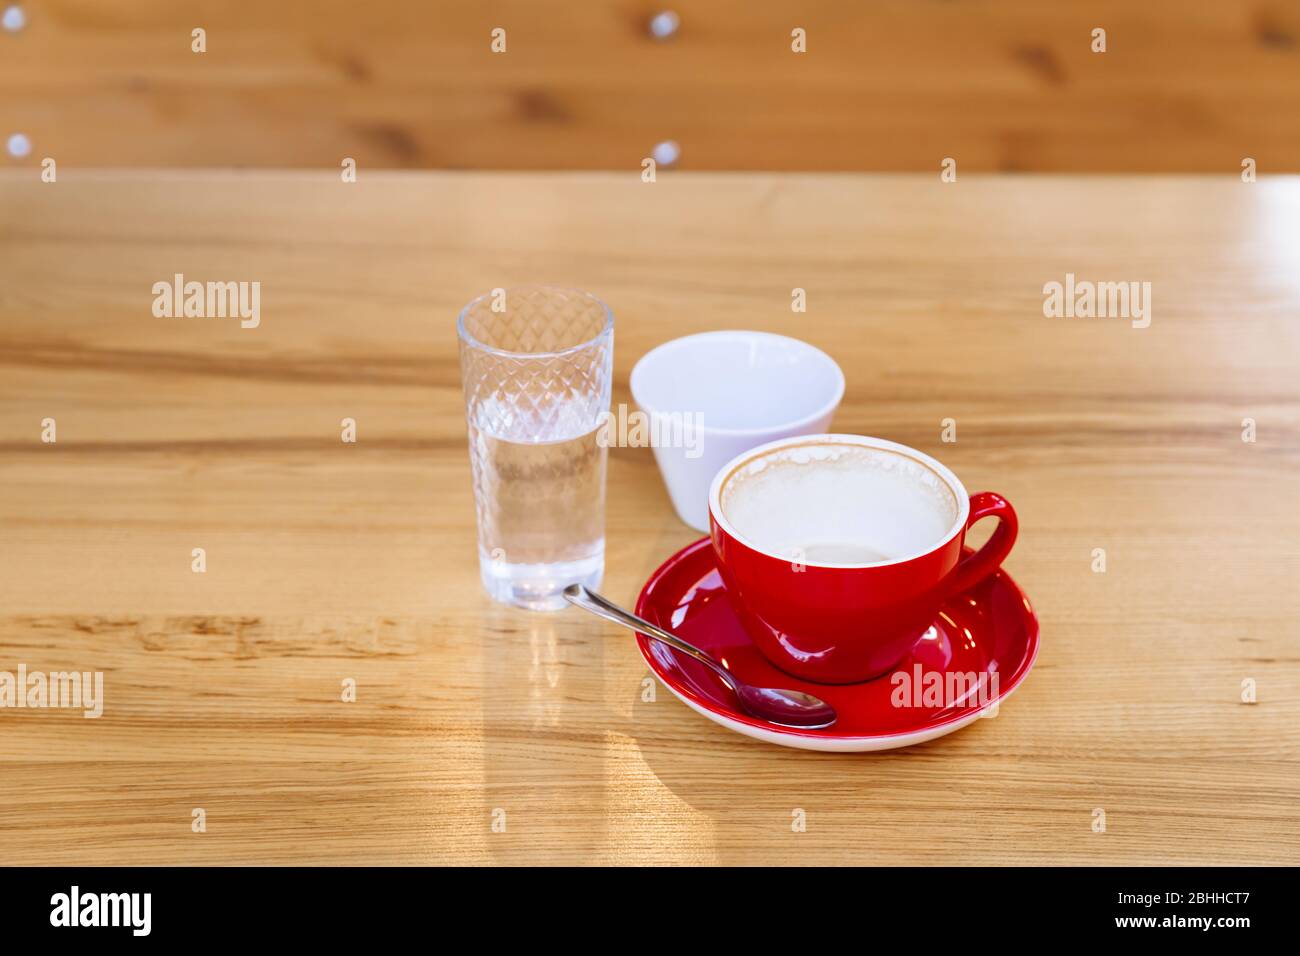 Tasses à café sales, cappuccino et un verre d'eau sur une table en bois. Pause café. Régalez-vous de goût et d'arôme. Banque D'Images